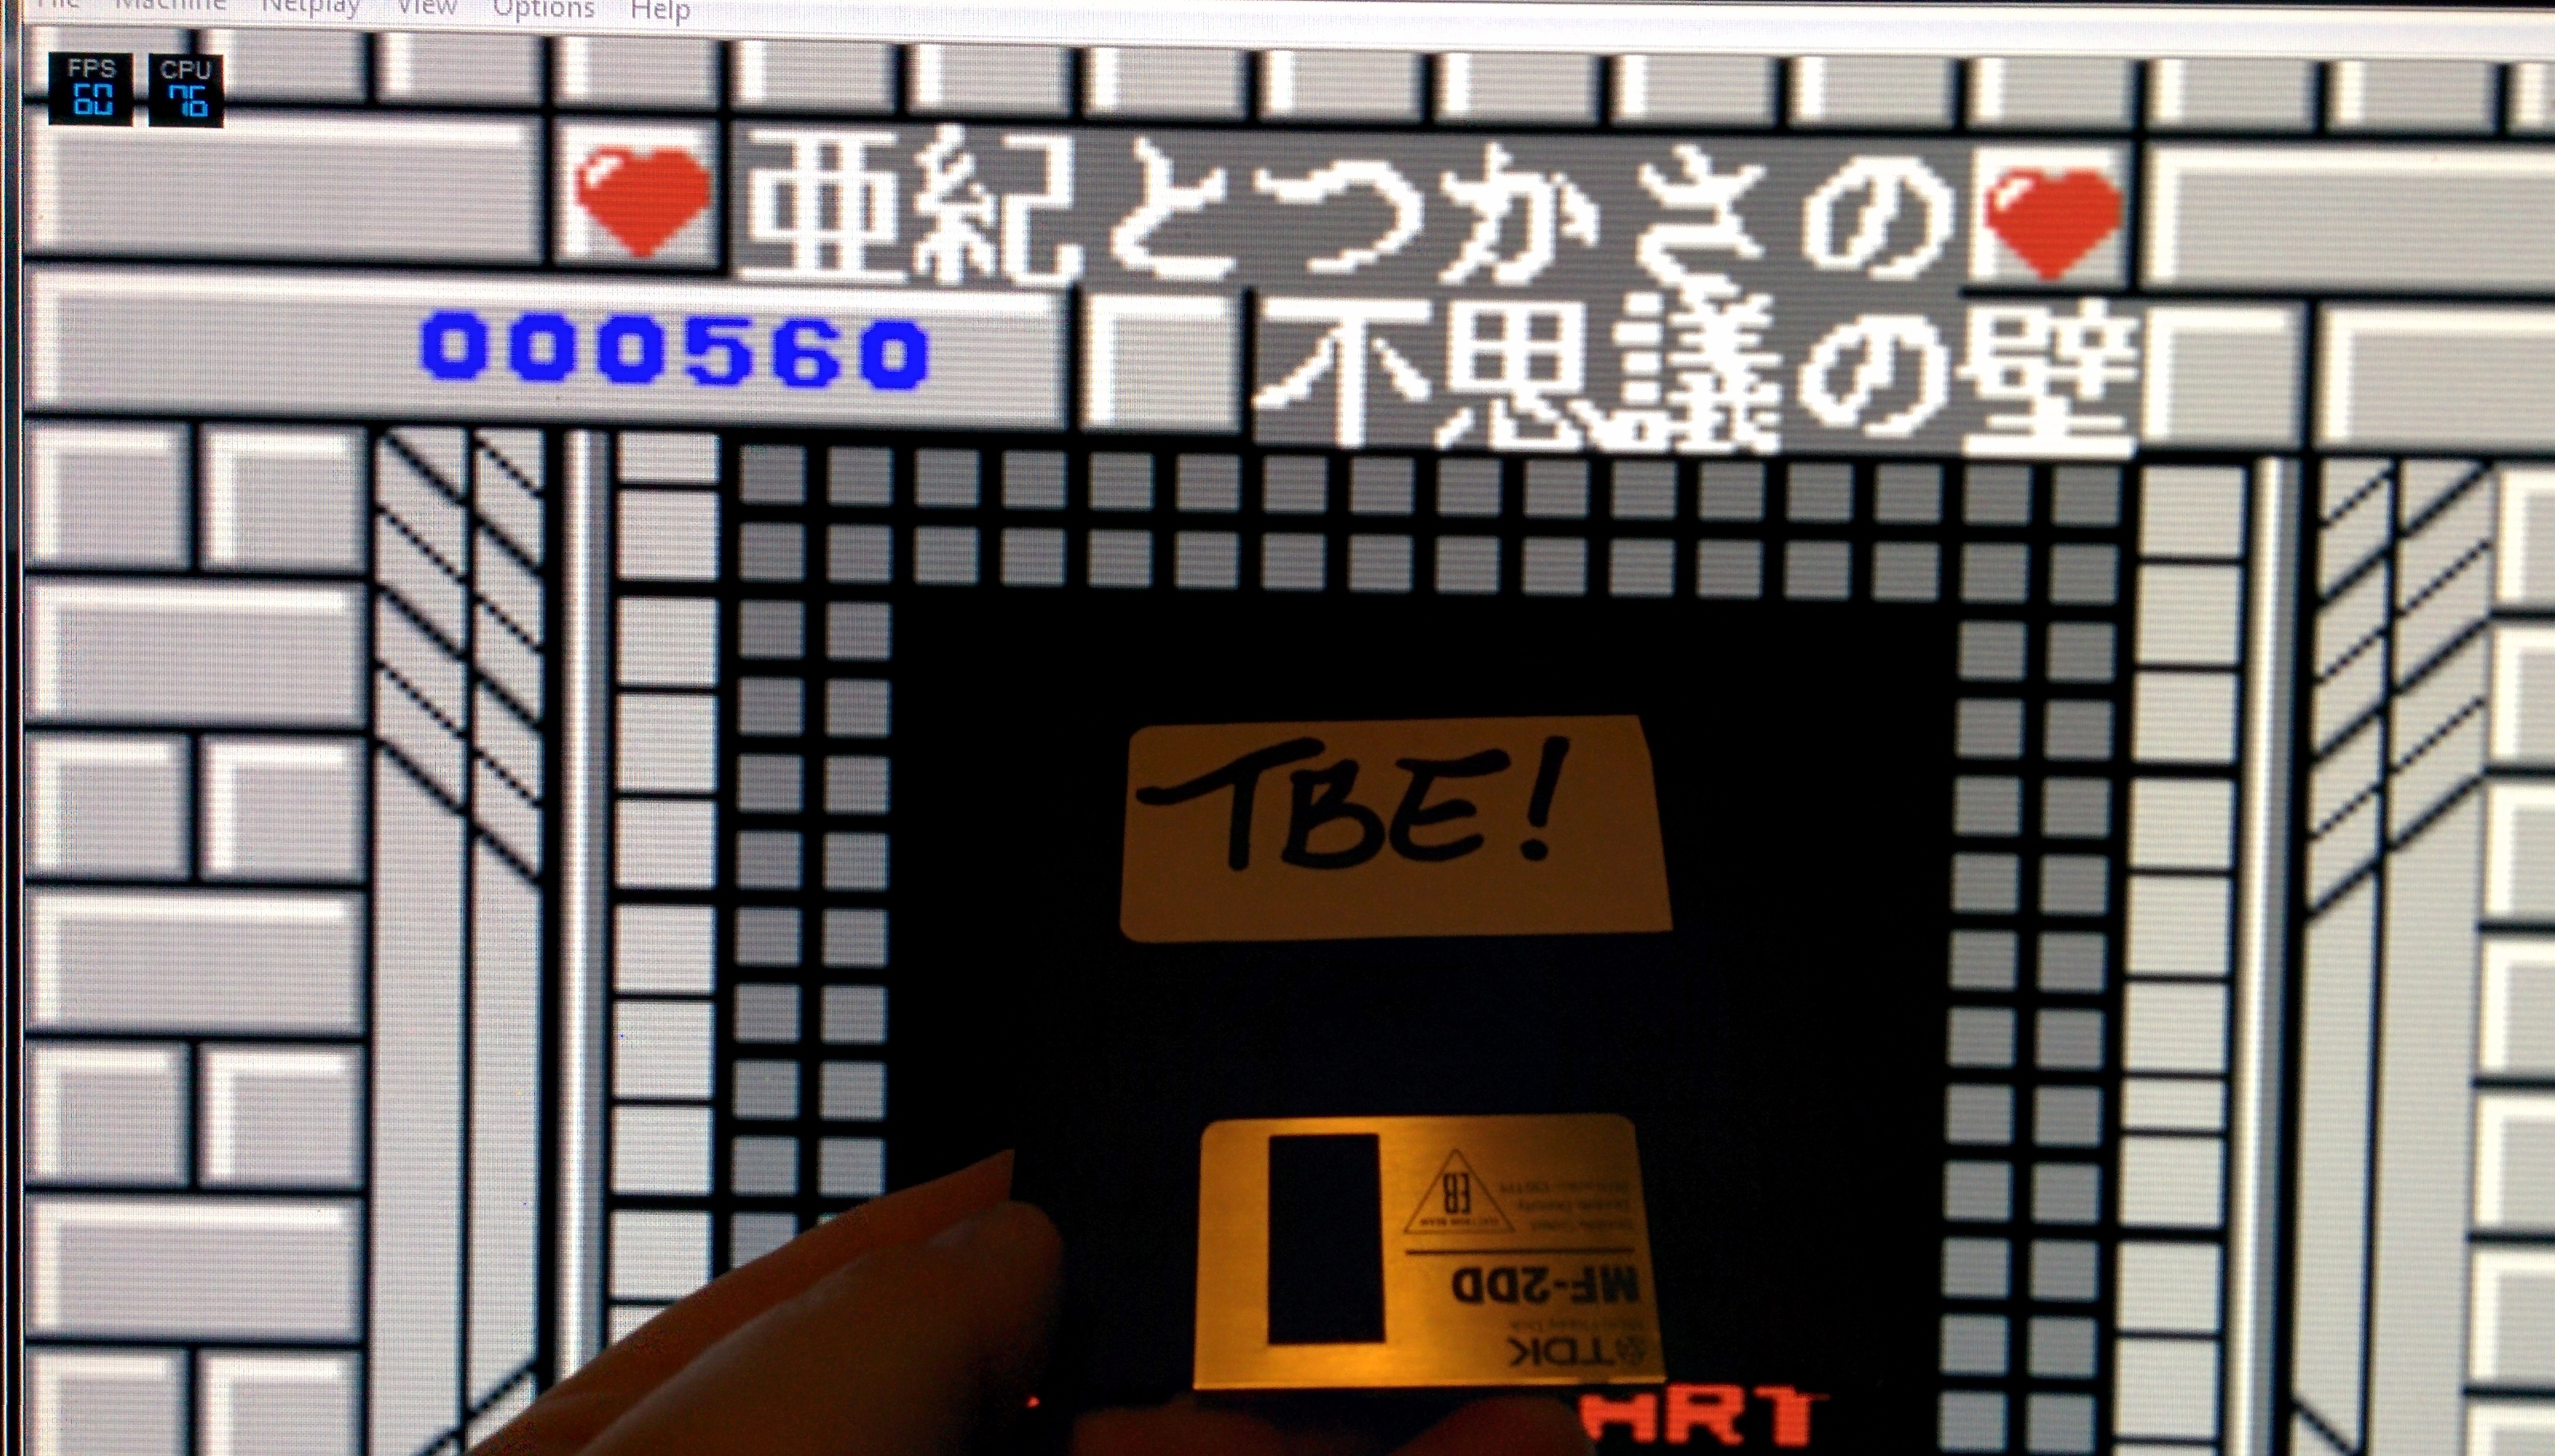 Sixx: Aki to Tsukasa no Fushigi (NES/Famicom Emulated) 560 points on 2014-11-23 05:55:12